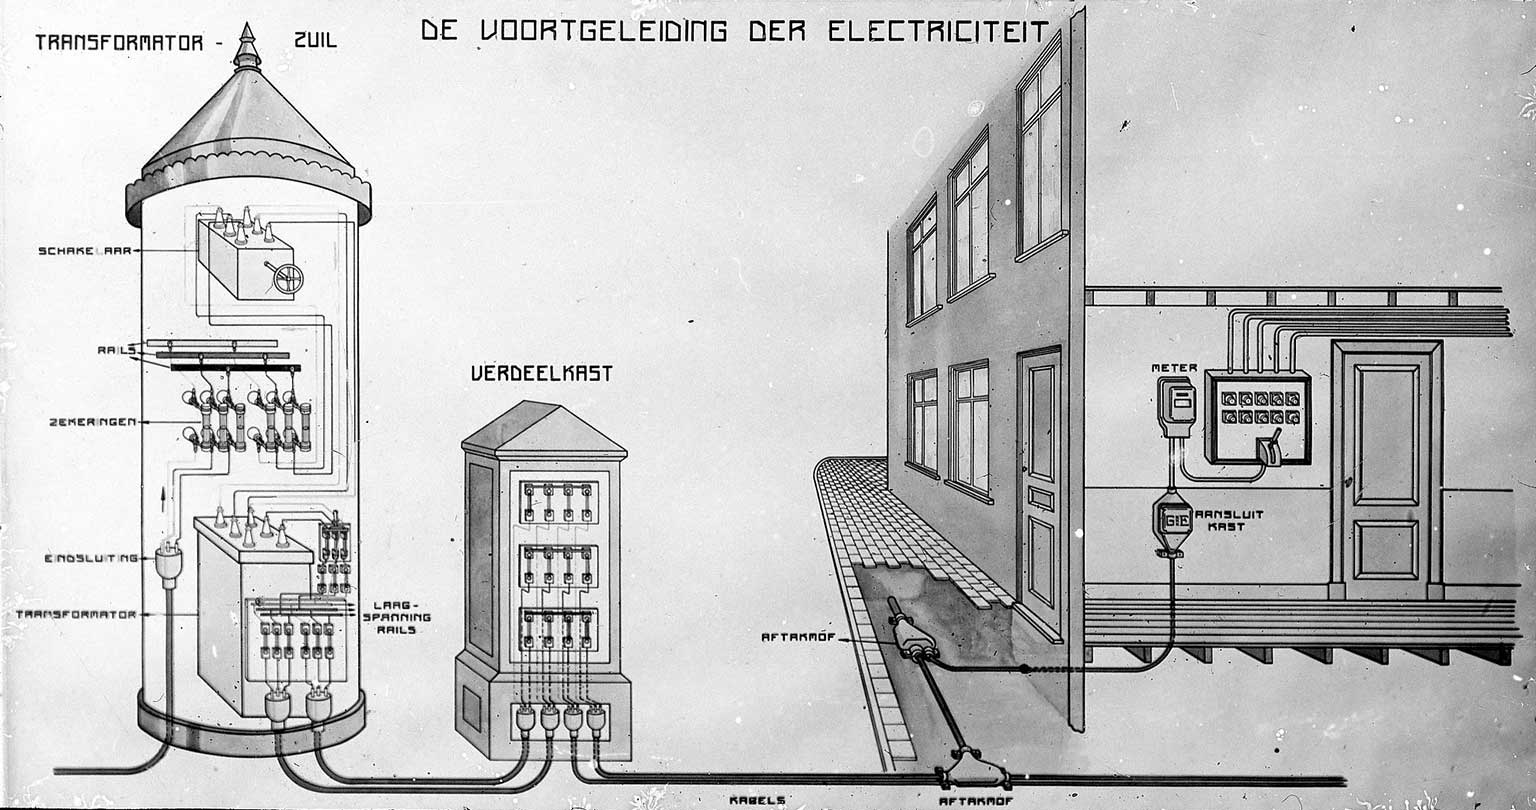 Schema uit 1915-1930 van transformatorzuil naar verdeelkast naar woning